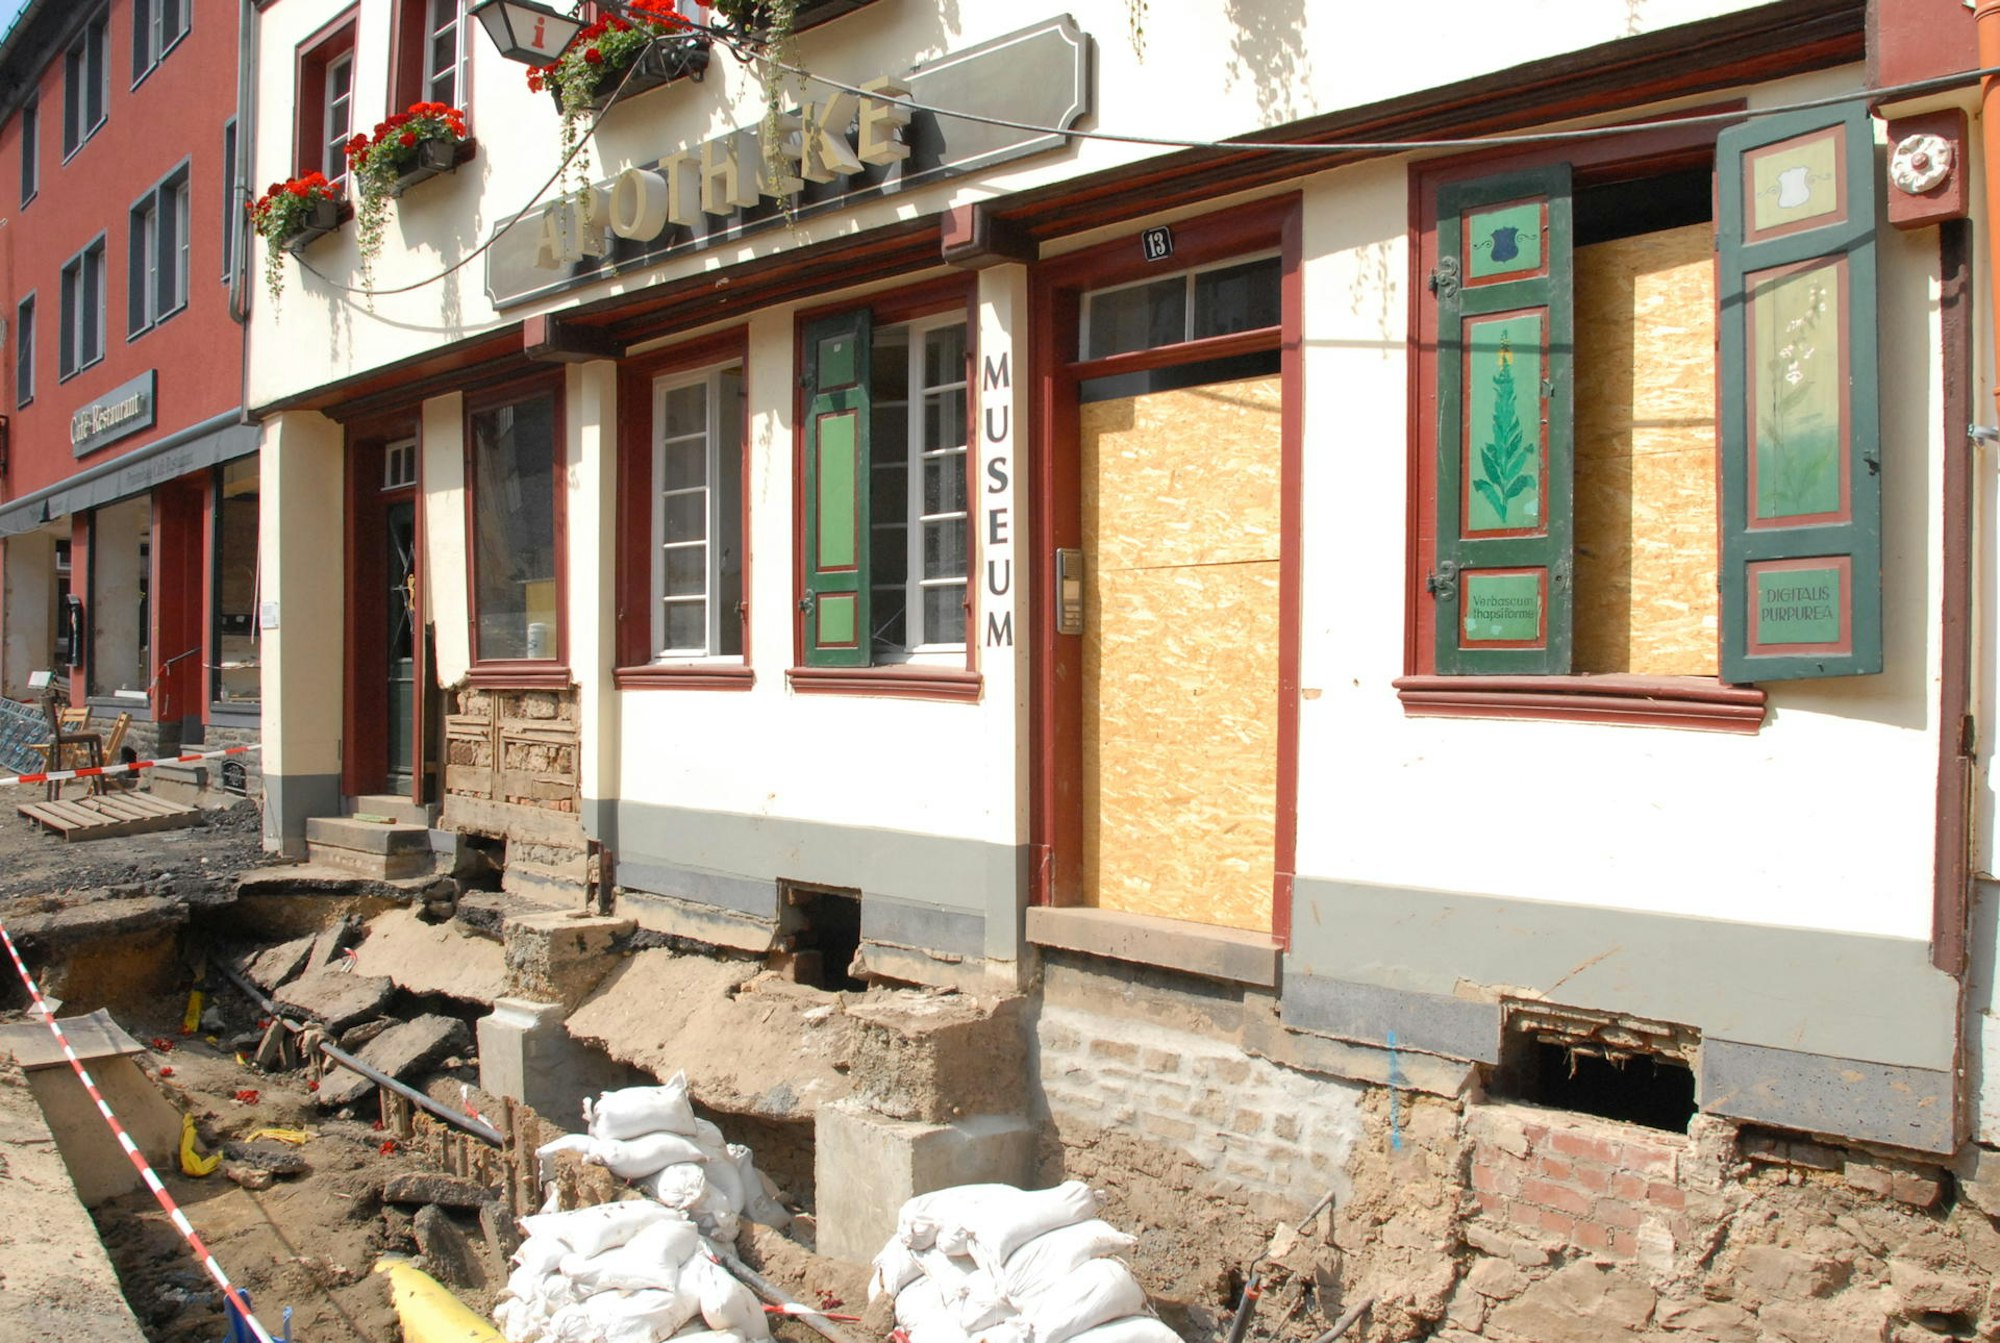 Mindestens ein Jahr wird das Apotheken-Museum in Bad Münstereifel geschlossen bleiben. Der Schaden, den das Hochwasser darin angerichtet hat, wird auf 250 000 Euro geschätzt.